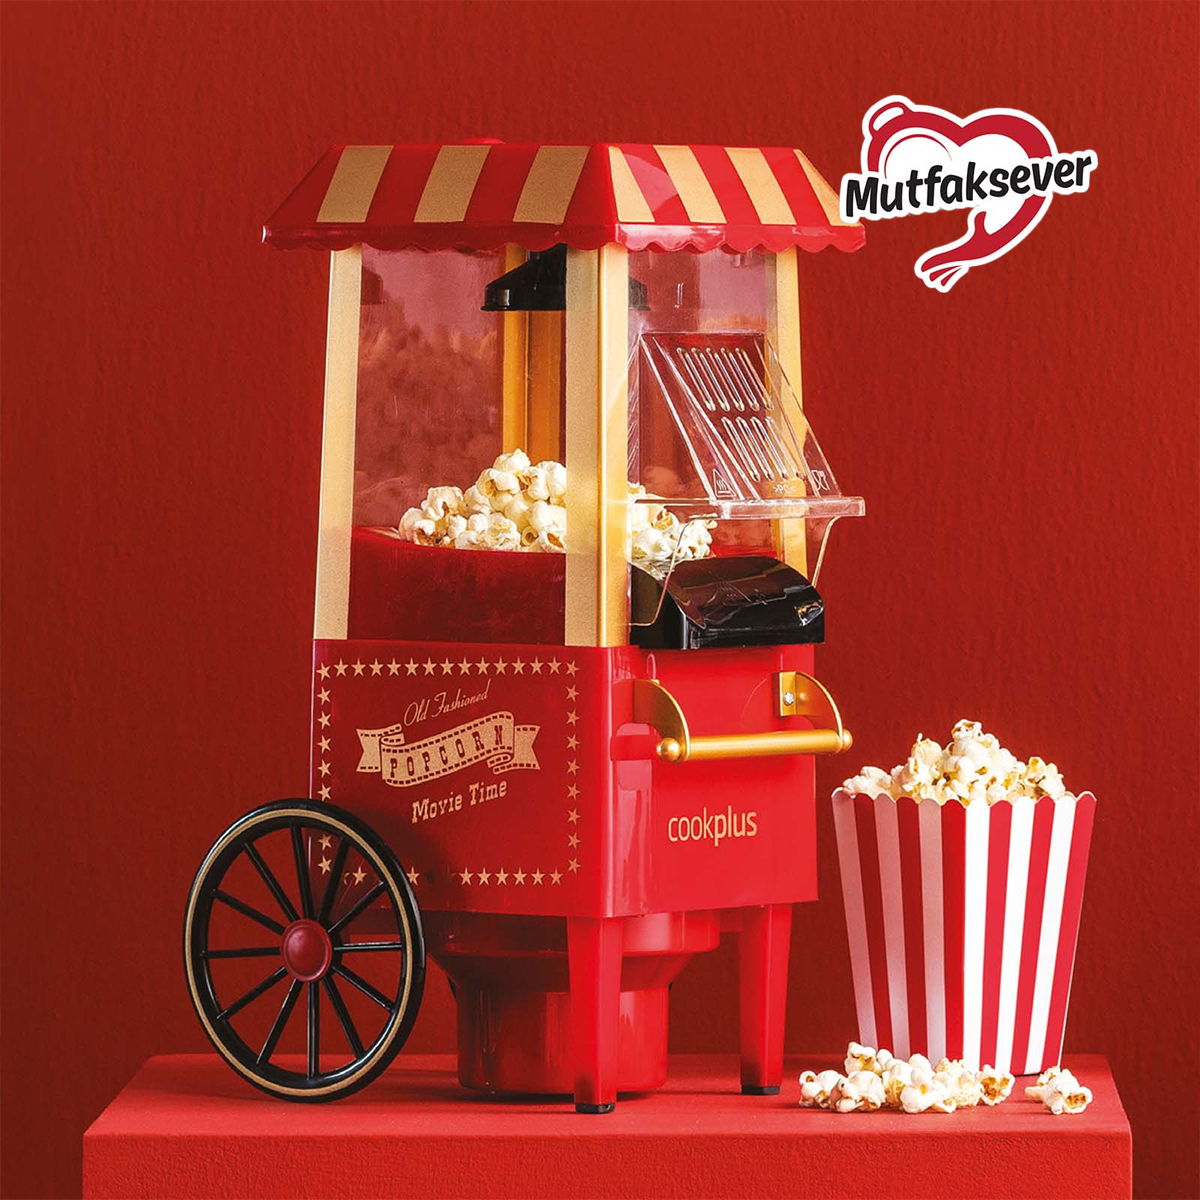 Cookplus Mutfaksever Kırmızı Mısır Patlatma Popcorn Makinesi